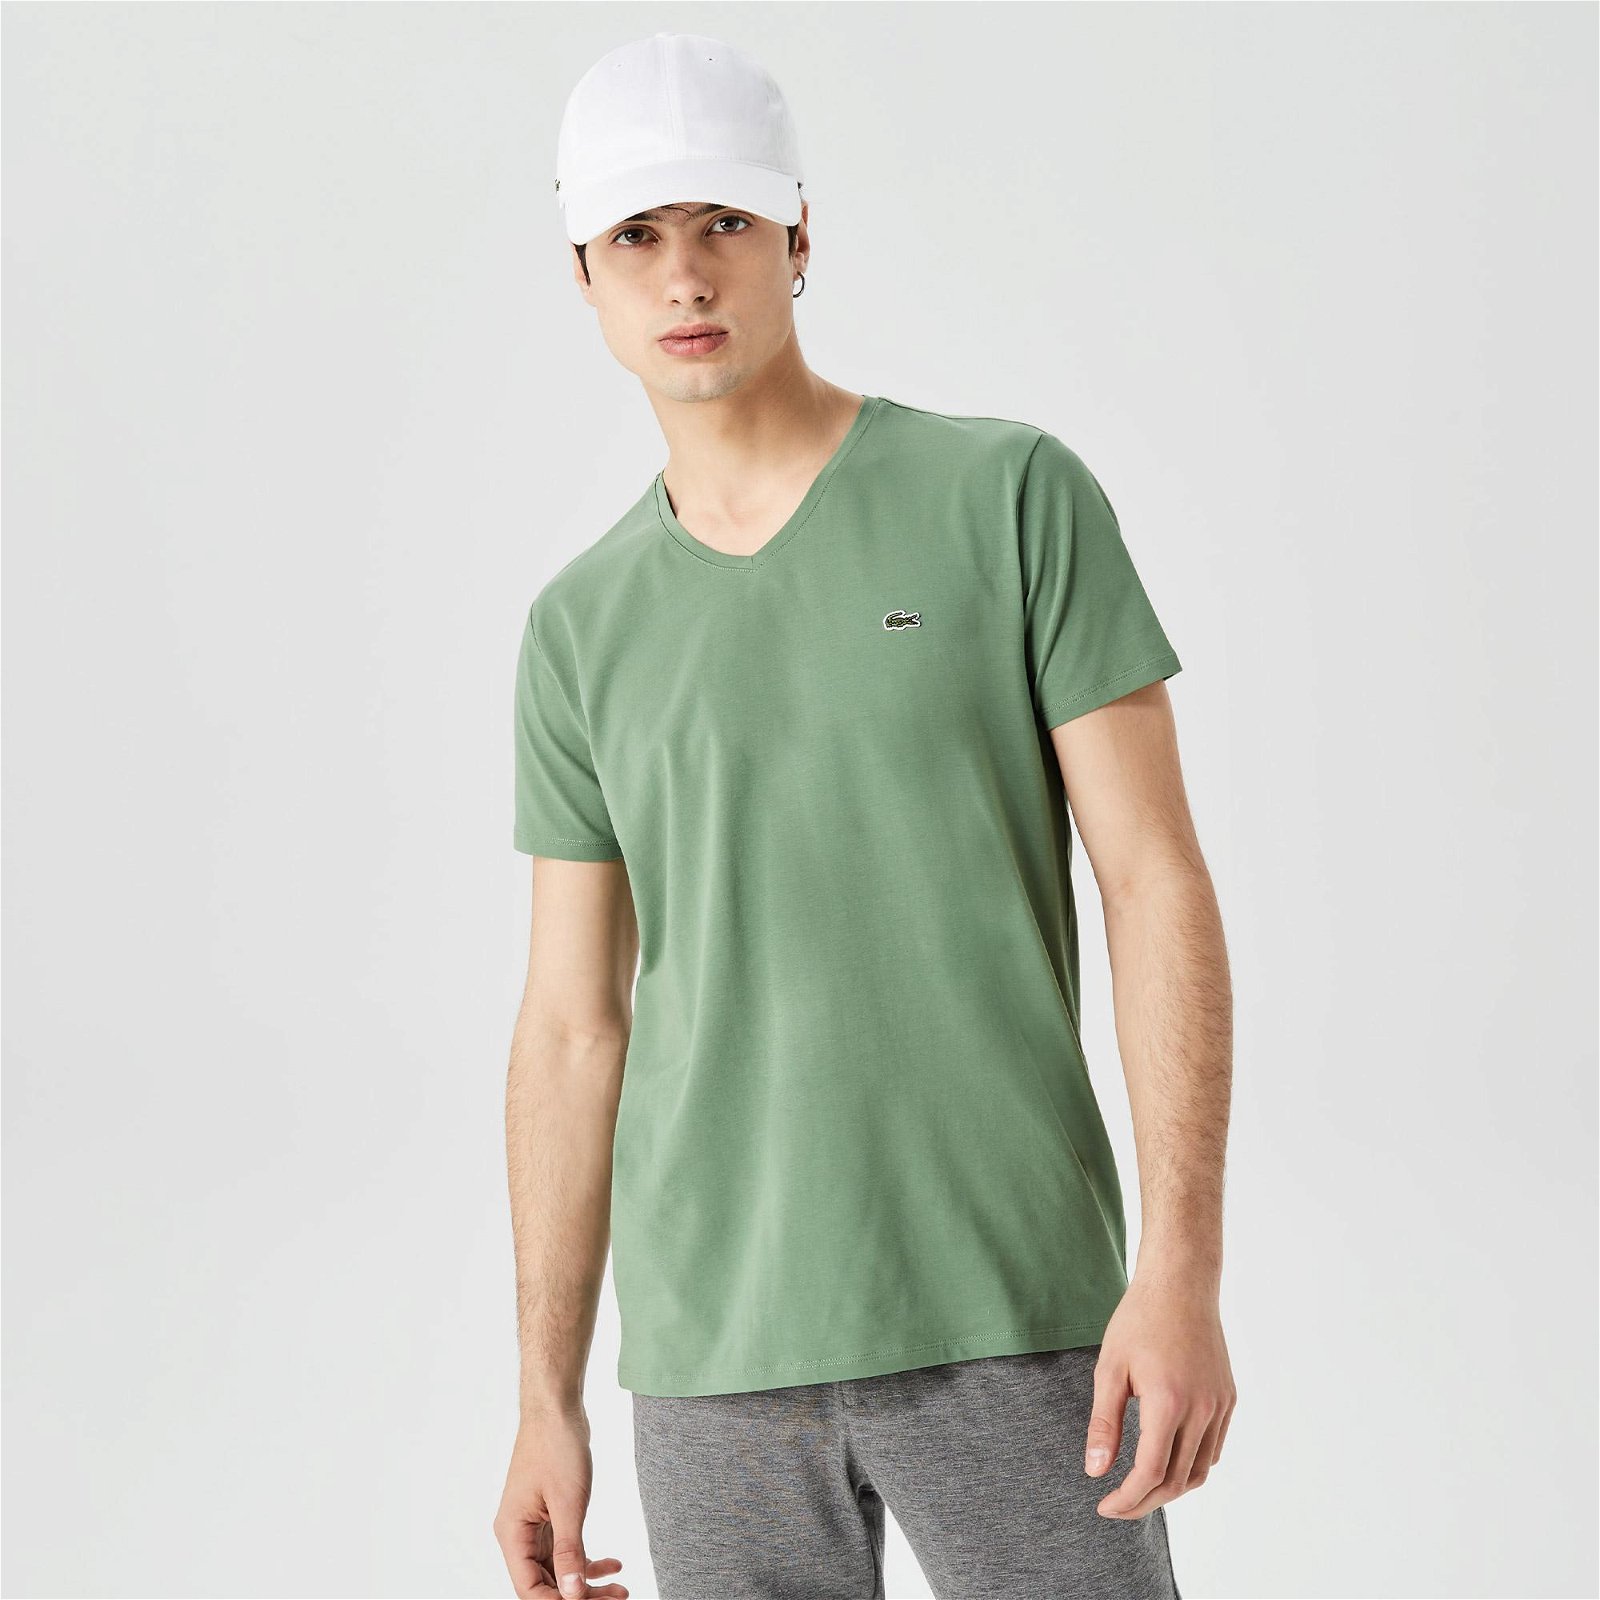 Lacoste Erkek Slim Fit V Yaka Yeşil T-Shirt